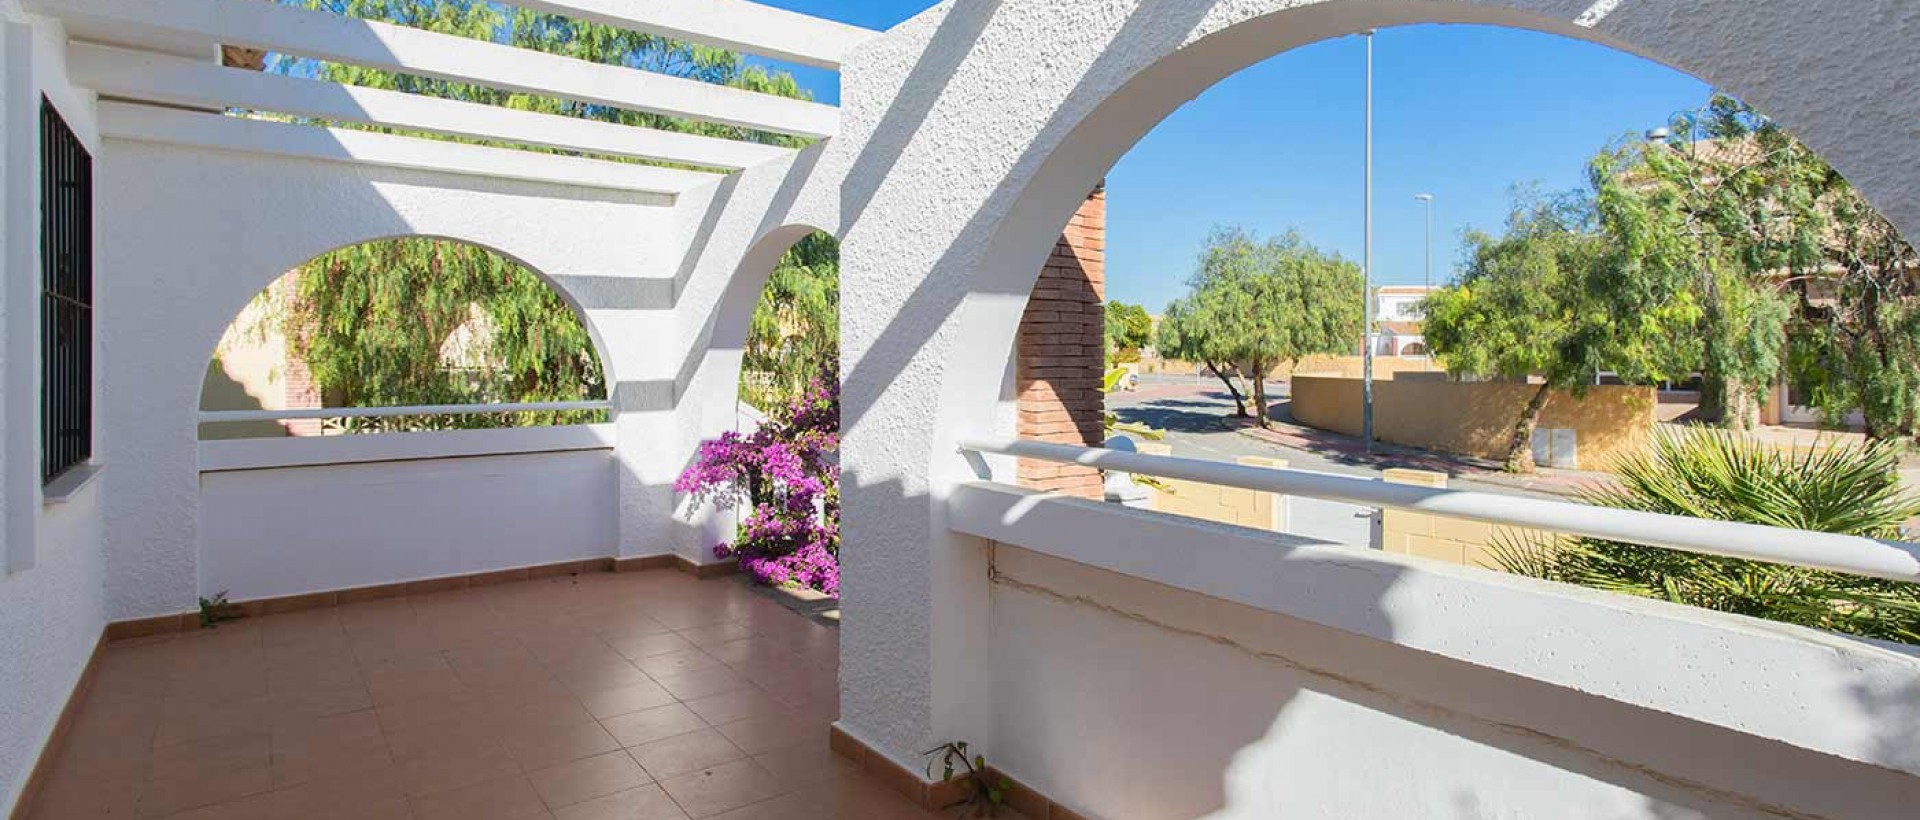 Villa de estilo español en venta en Nueva Sierra Golf en Balsicas, Torre-Pacheco, Costa Cálida